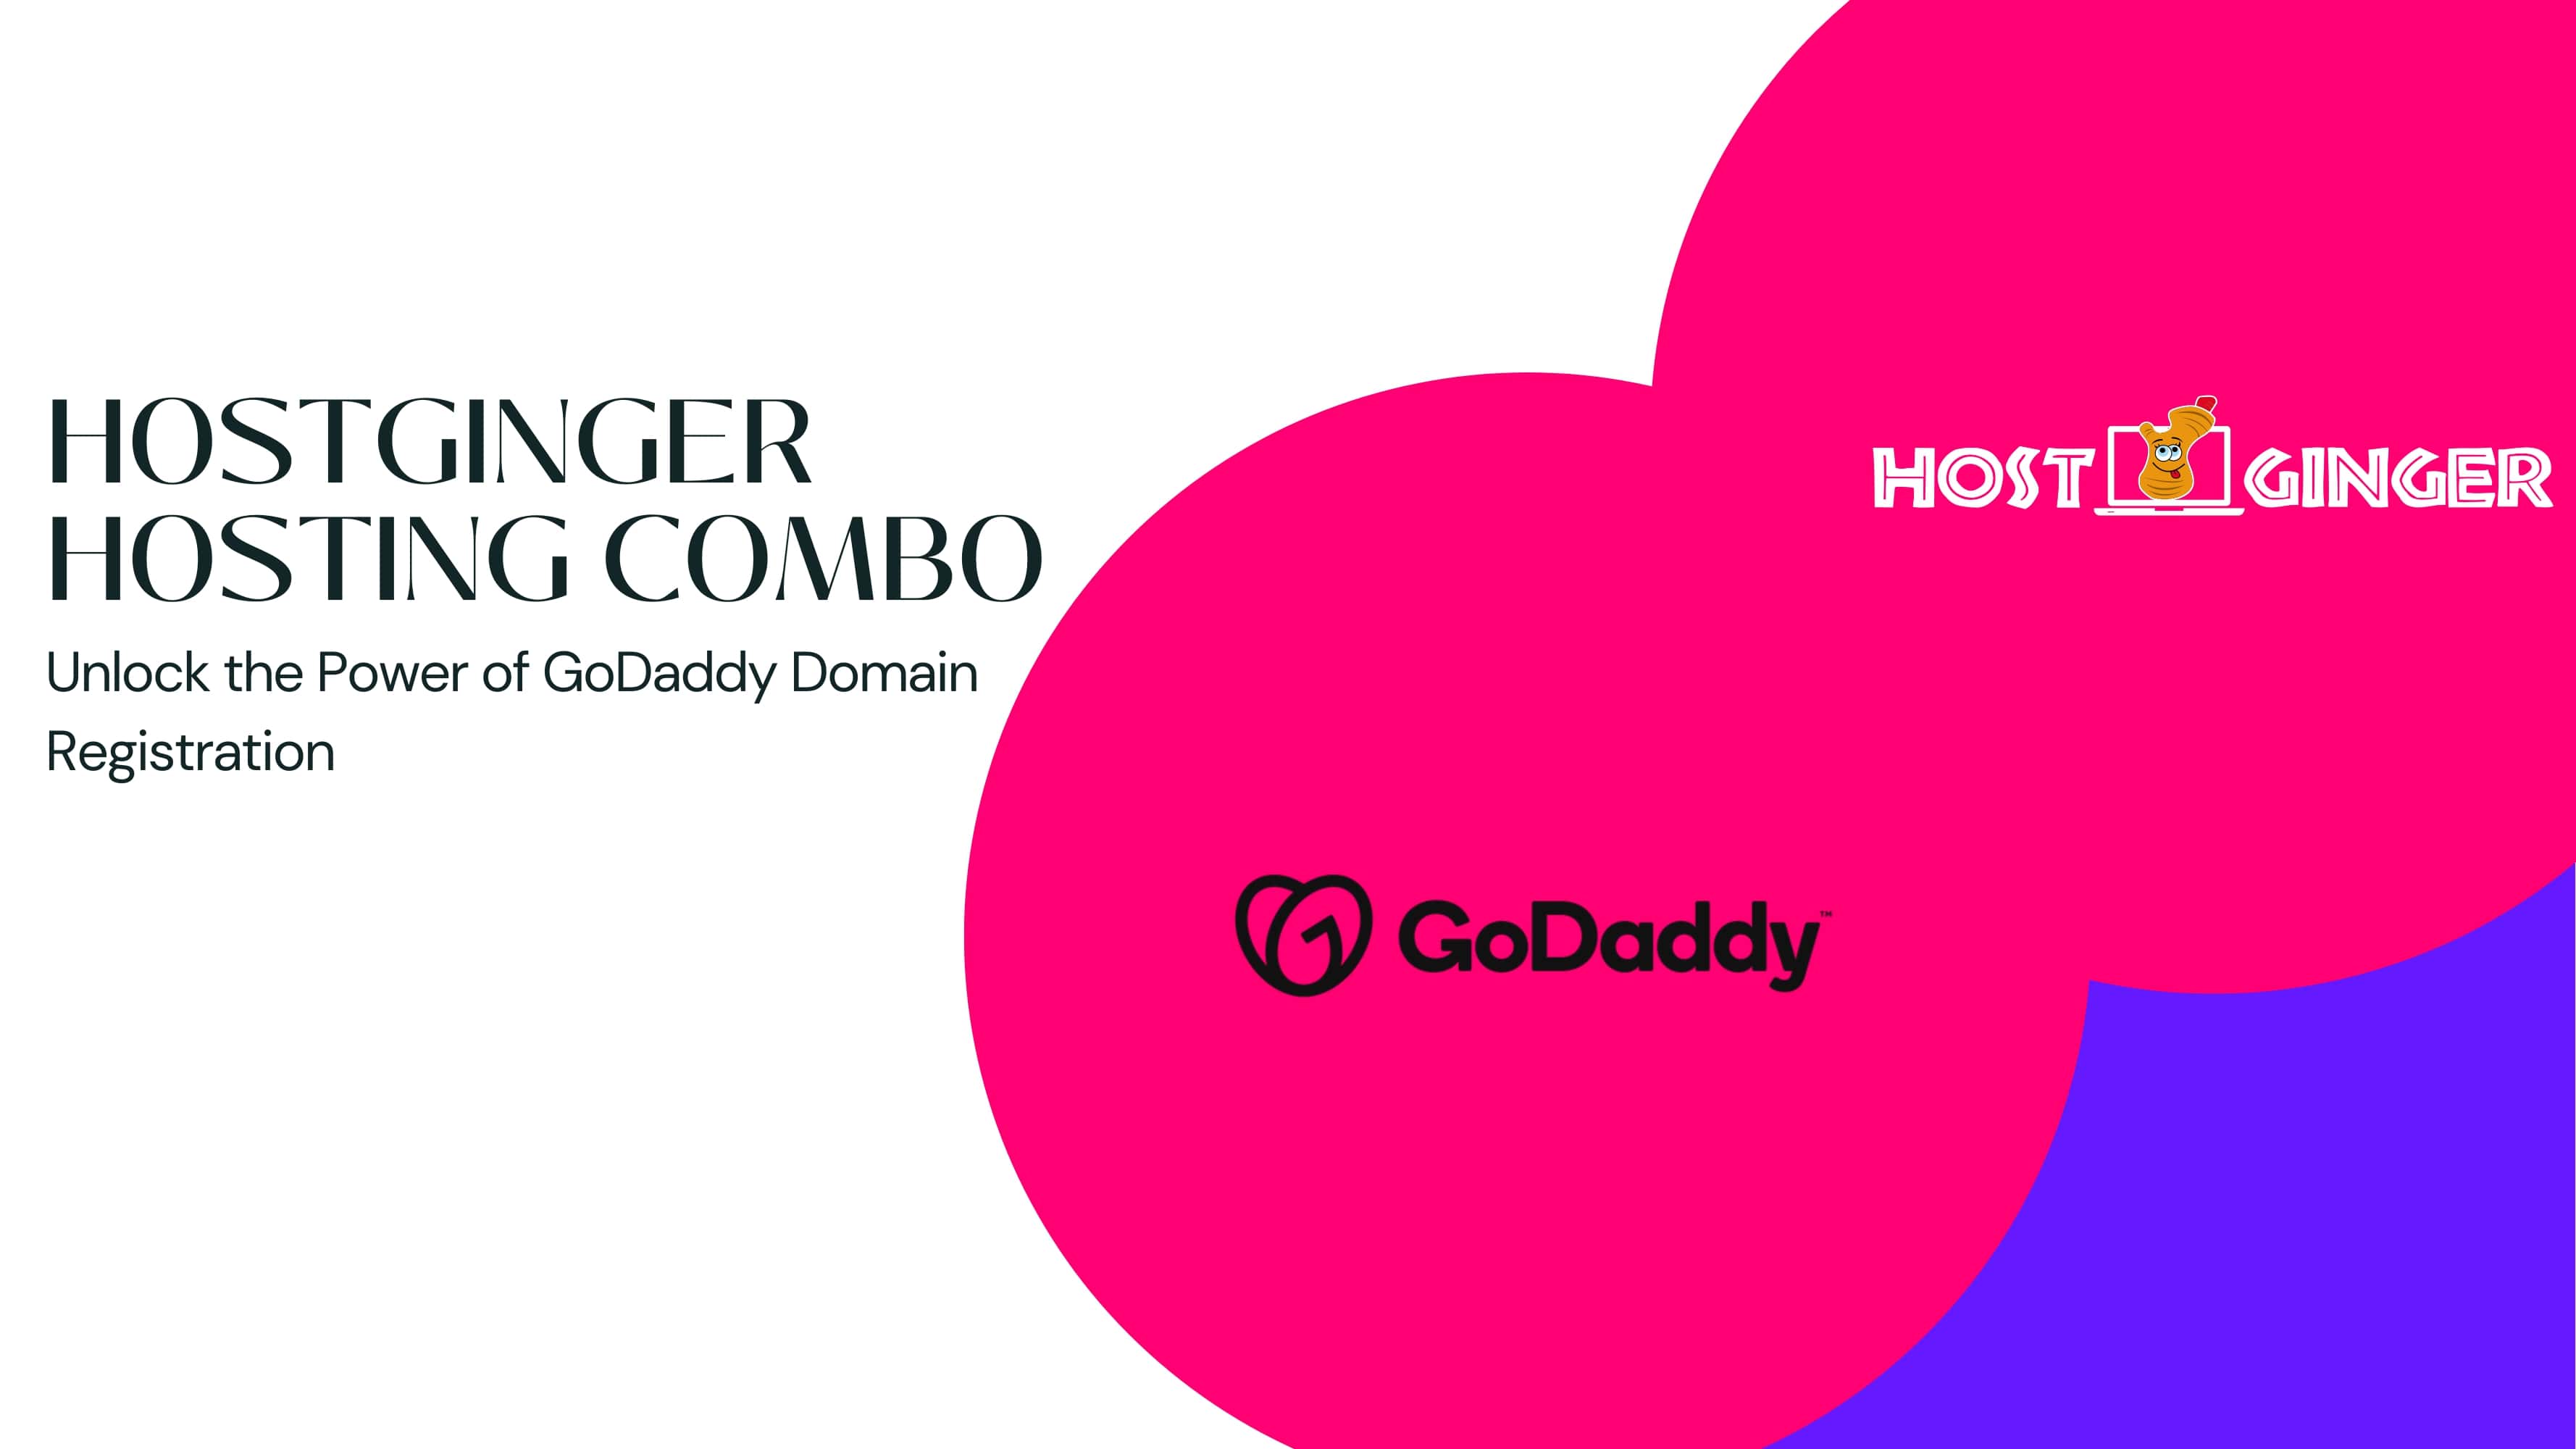 GoDaddy Domain Registration and Hostginger Hosting Combo